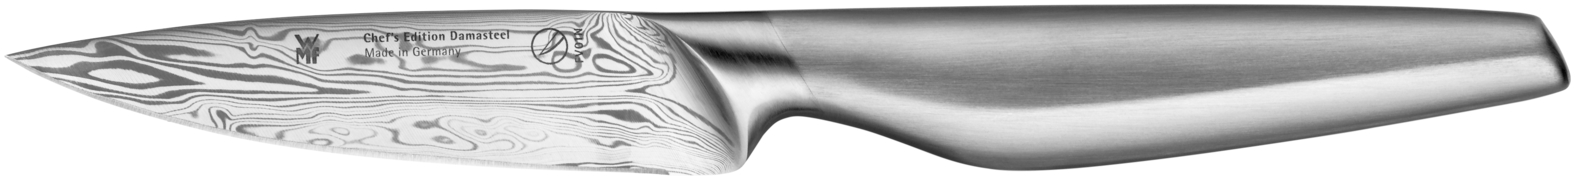 Универсальный нож Chef's Edition Damasteel 10см. универсальный рассухариватель автоdело